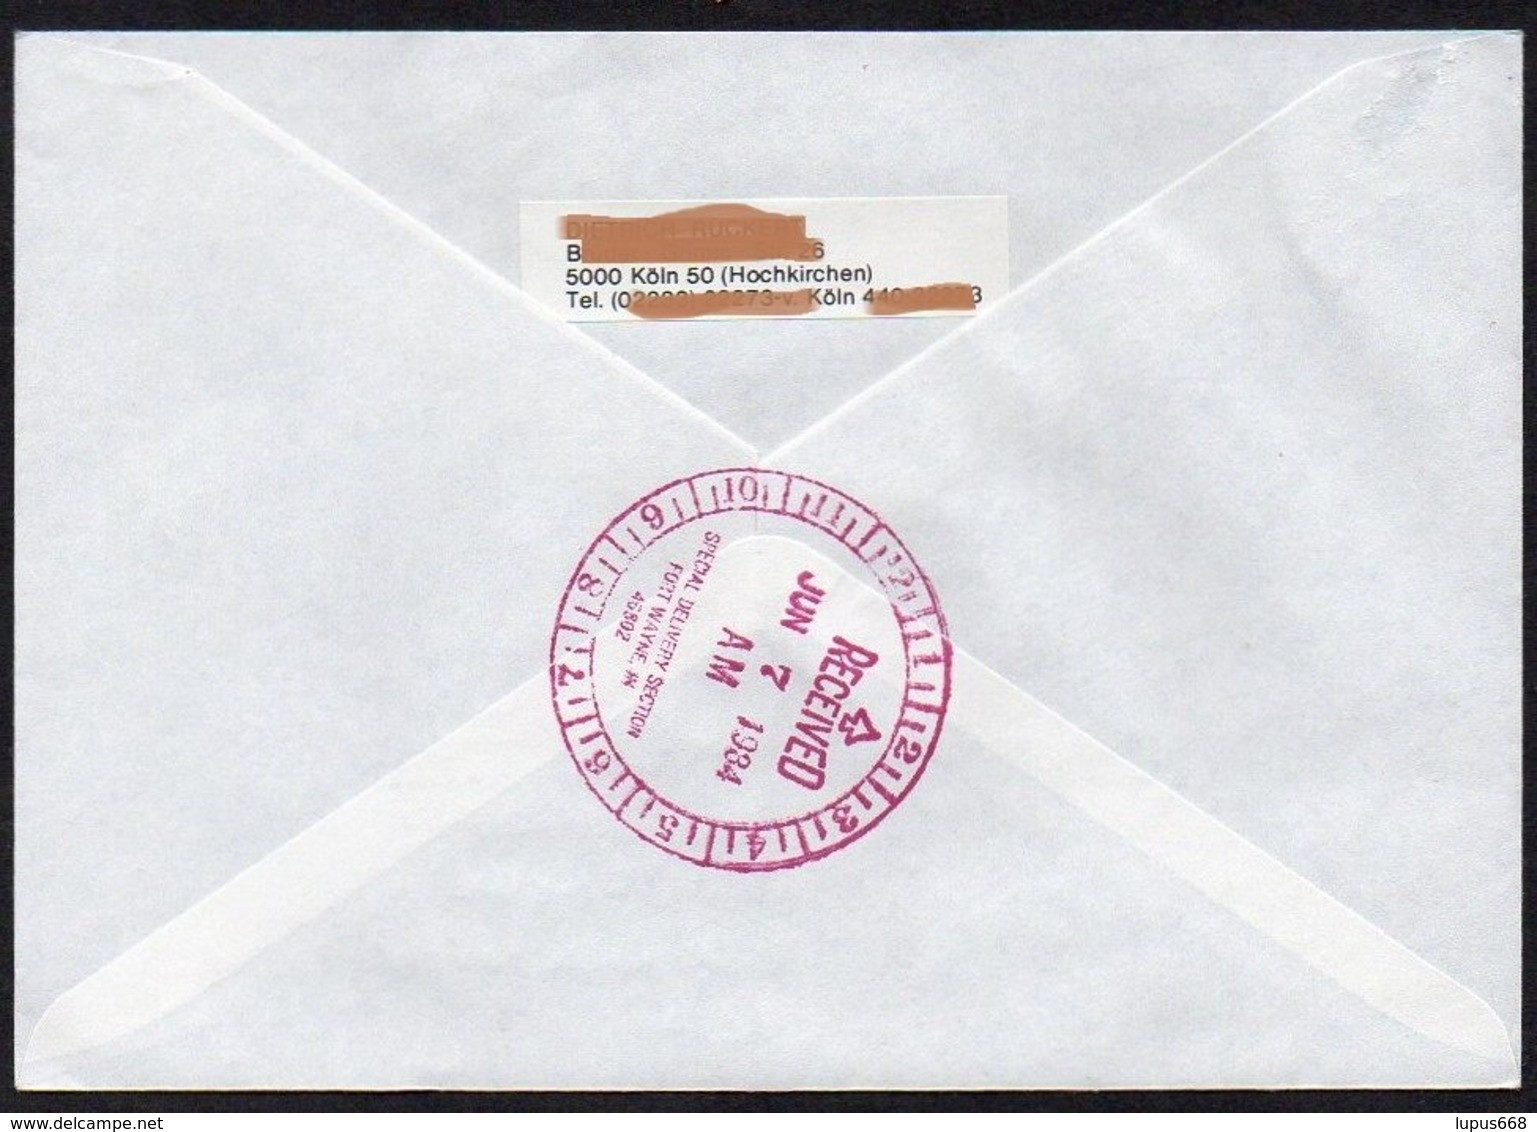 UNO - Wien  1984  MiNr. 44 (2)  Auf Express - Brief In Die U.S.A  ,  FDC; Eine Zukunft Für Flüchtlinge - Storia Postale